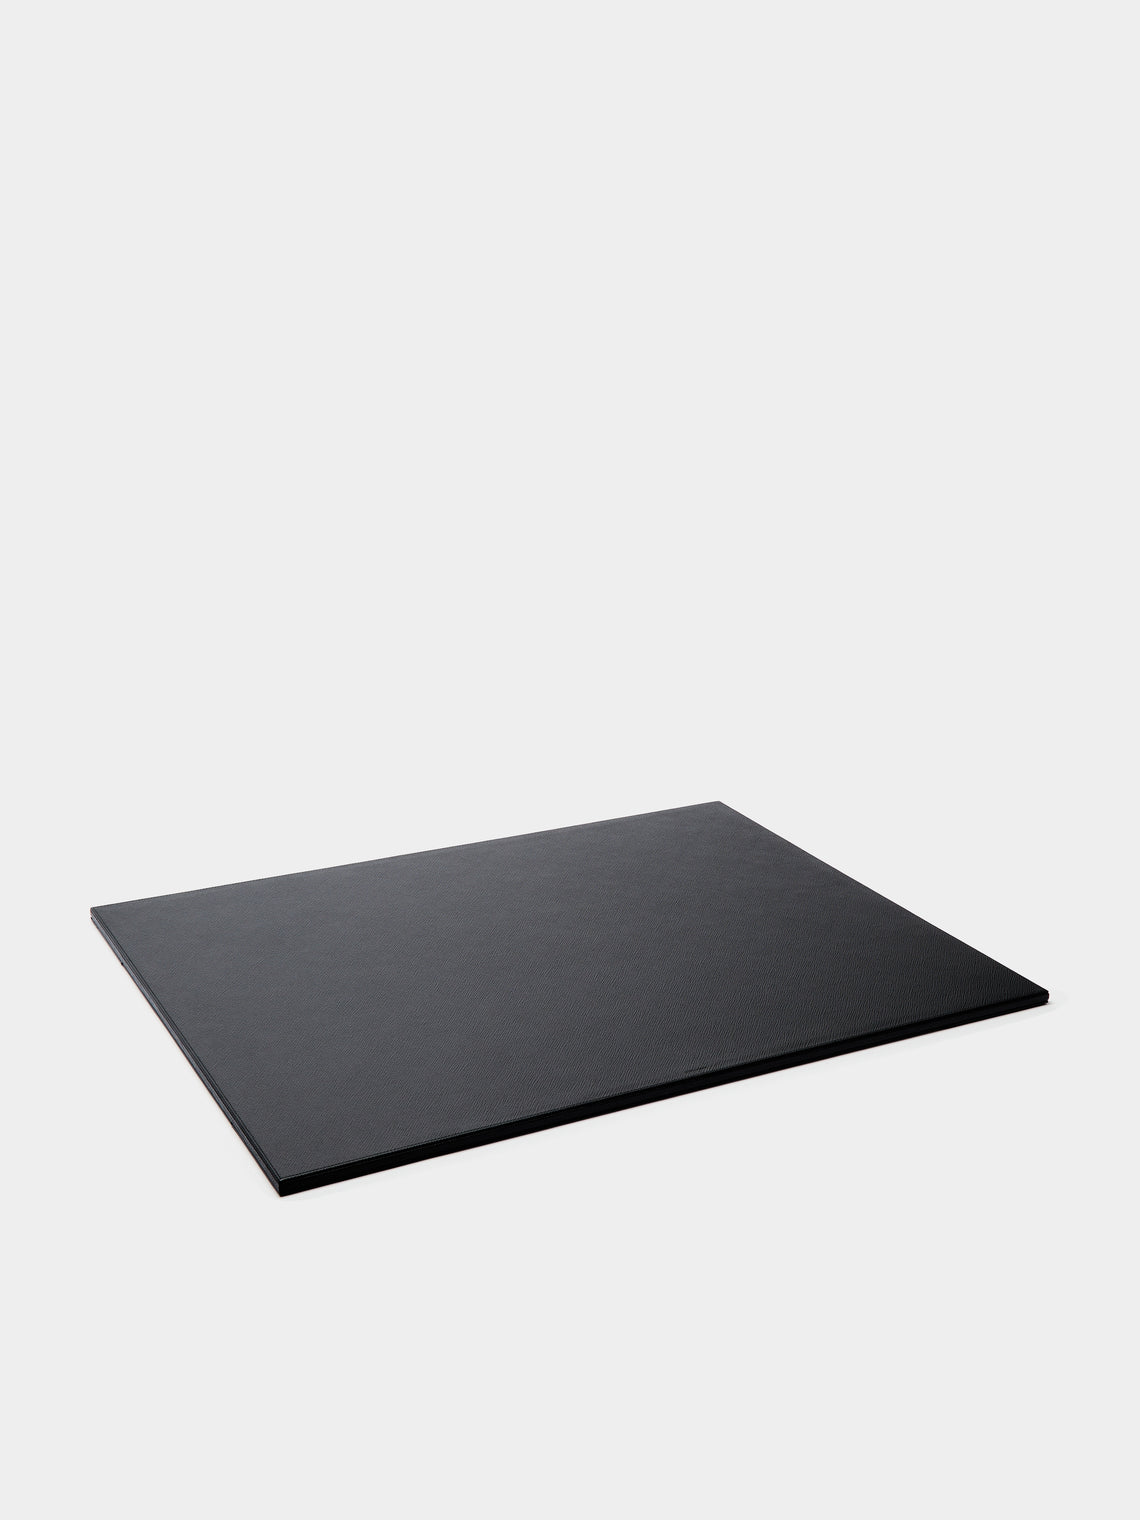 Smythson - Panama Large Leather Desk Mat - Black - ABASK